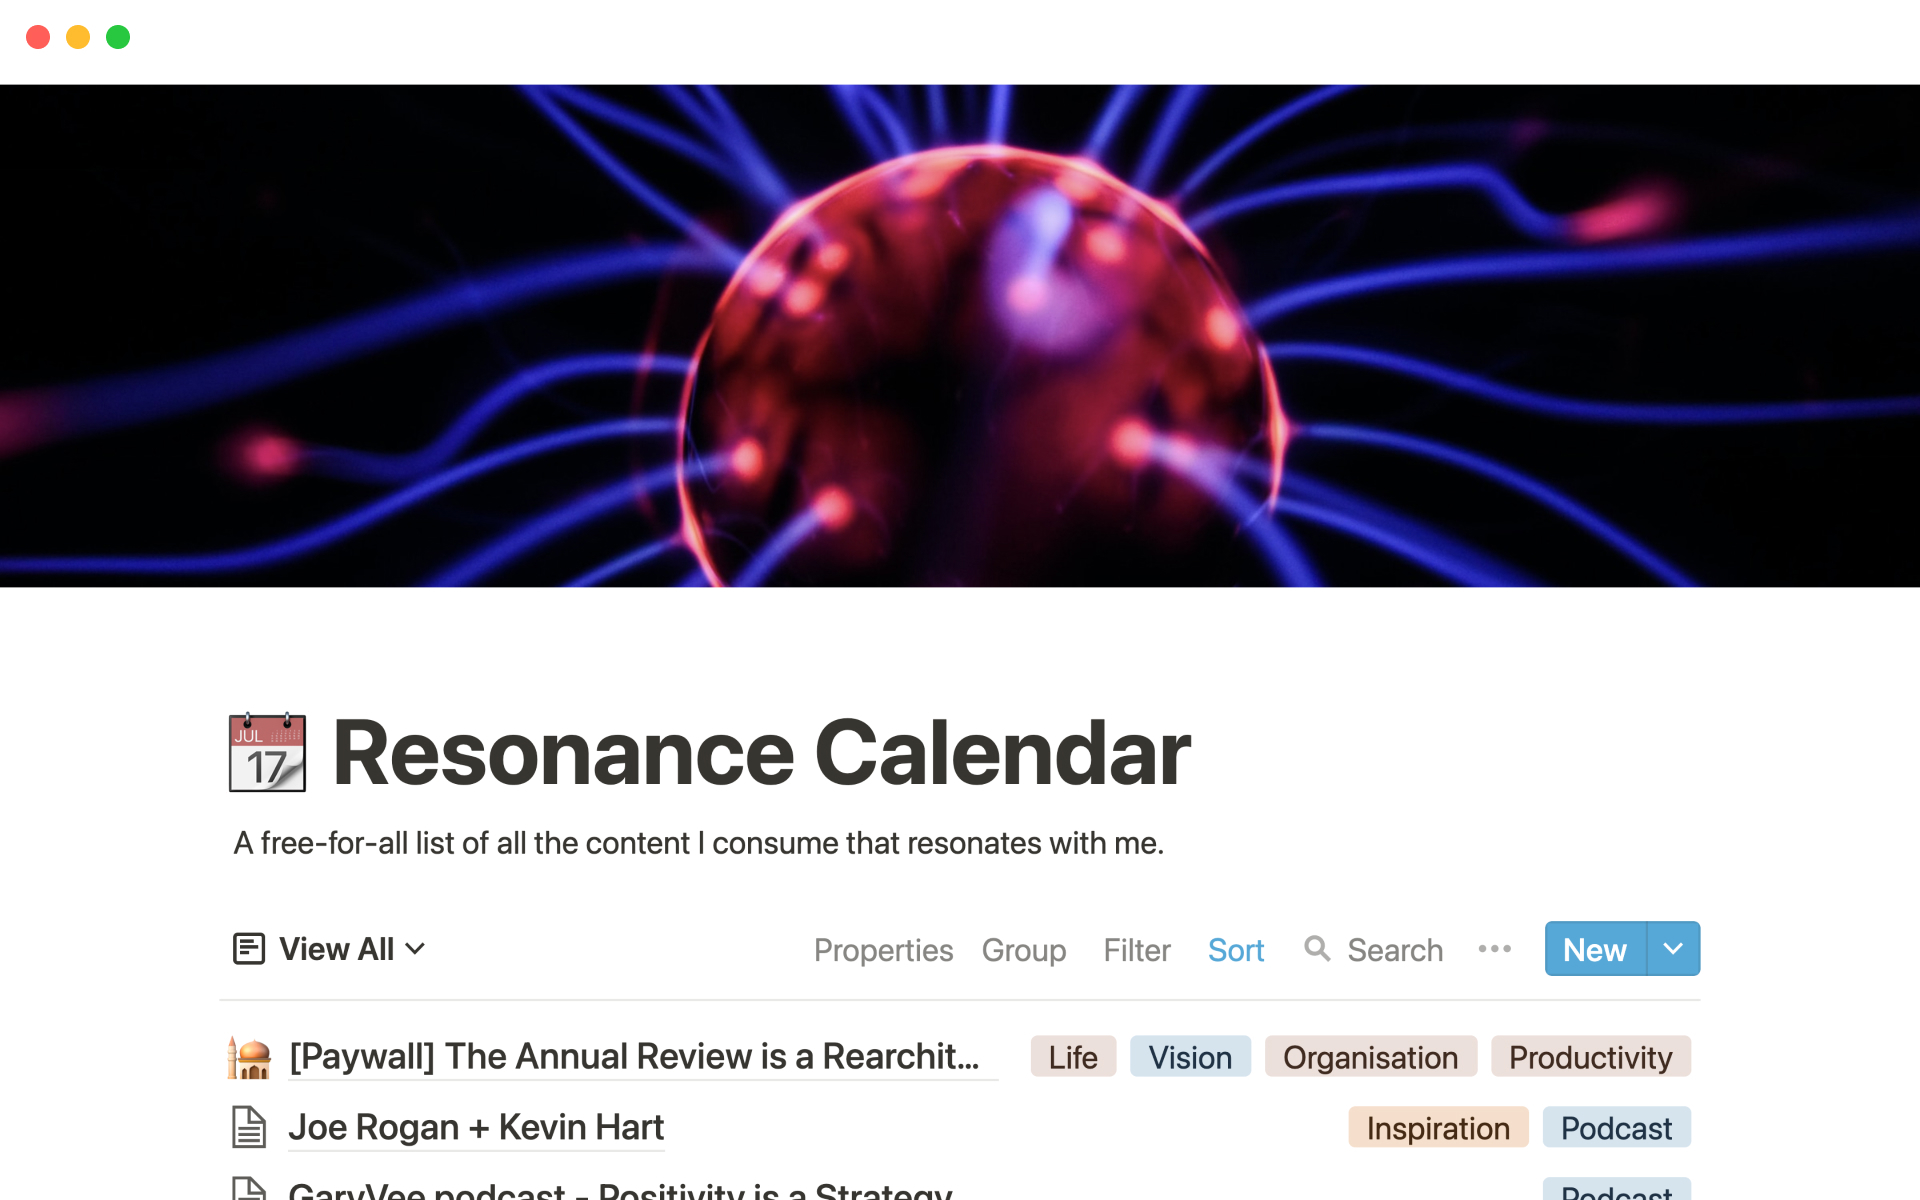 Vista previa de una plantilla para Ali Abdaal's resonance calendar